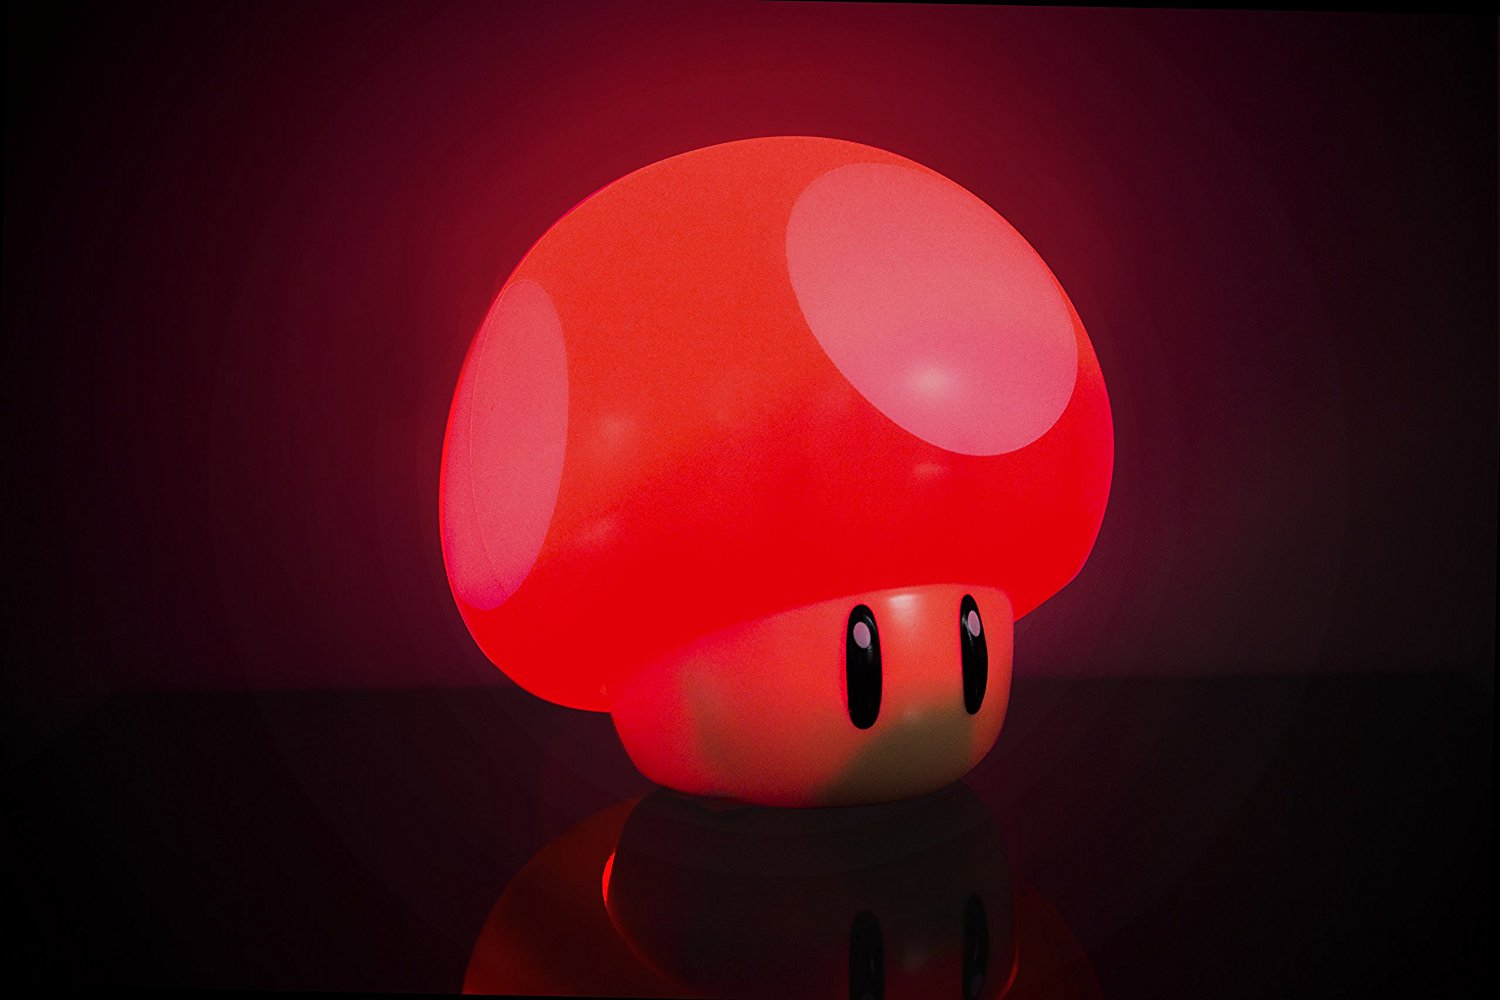 Lampada - Nintendo - Super Mario - Mushroom